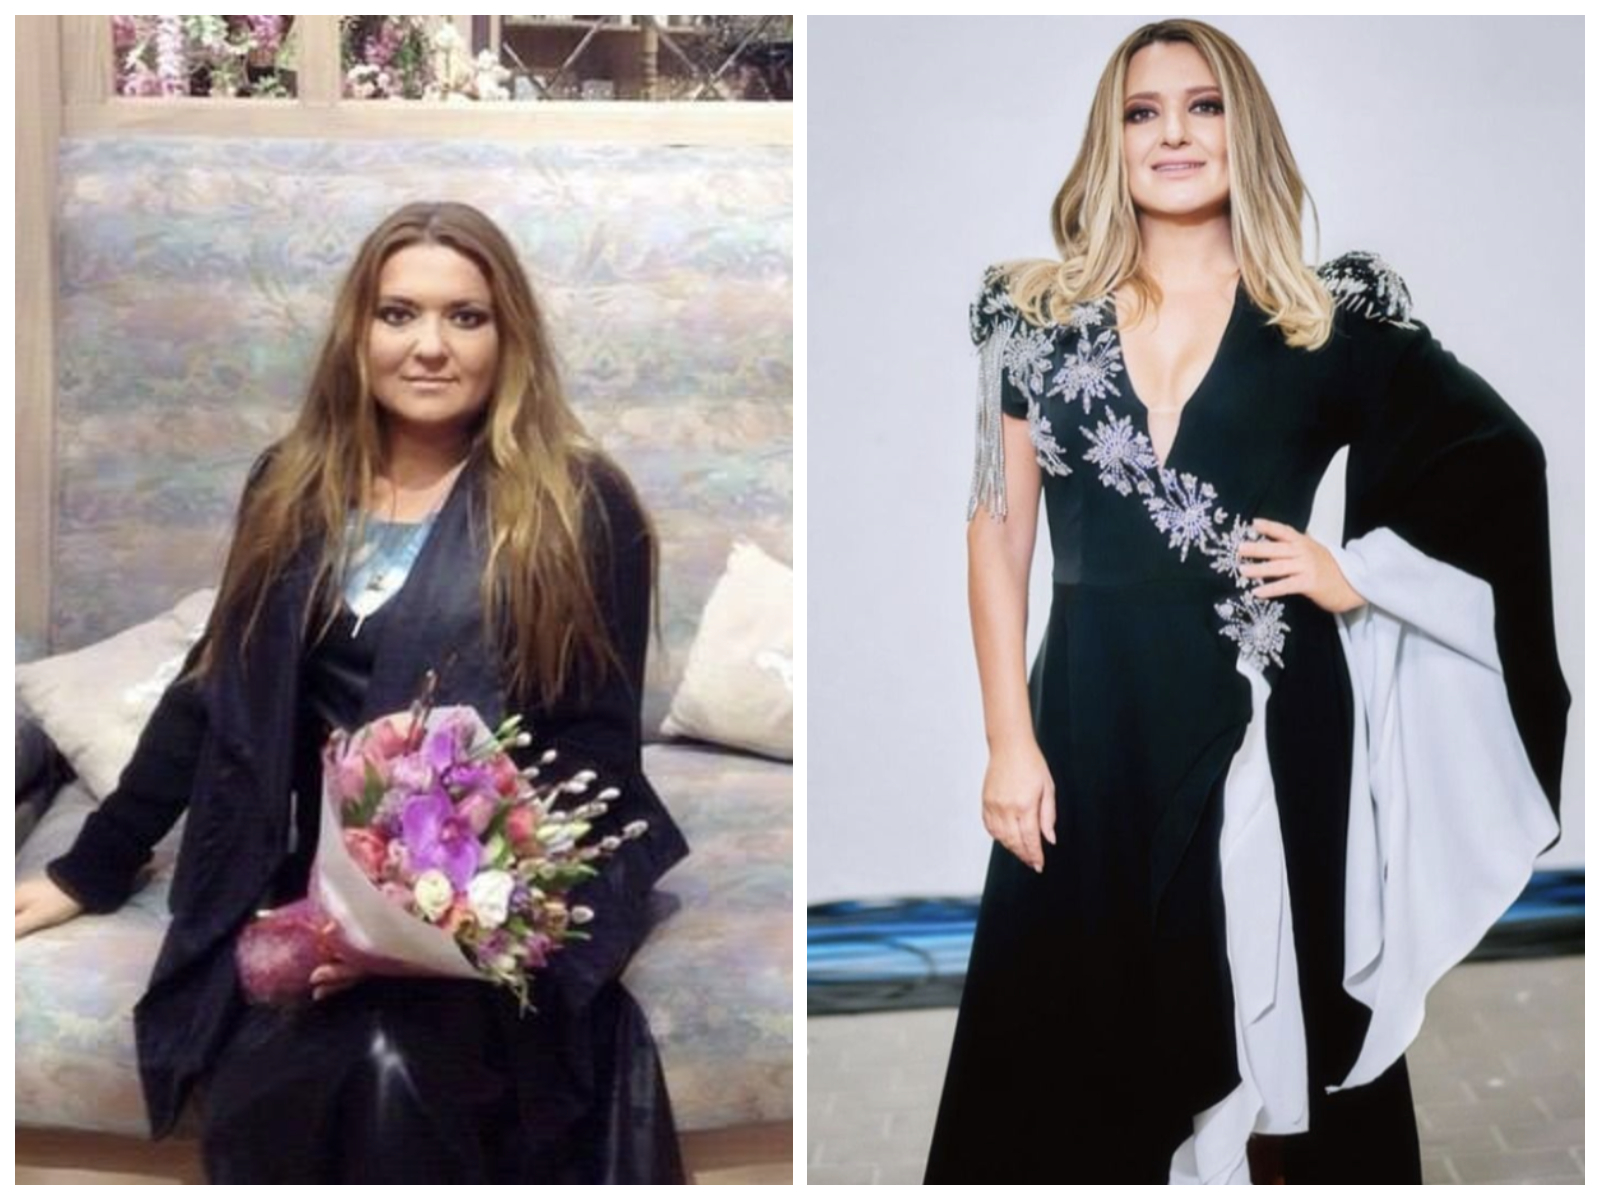 Підбірка фото «до» та «після» схуднення зірок: Наталя Могилевська